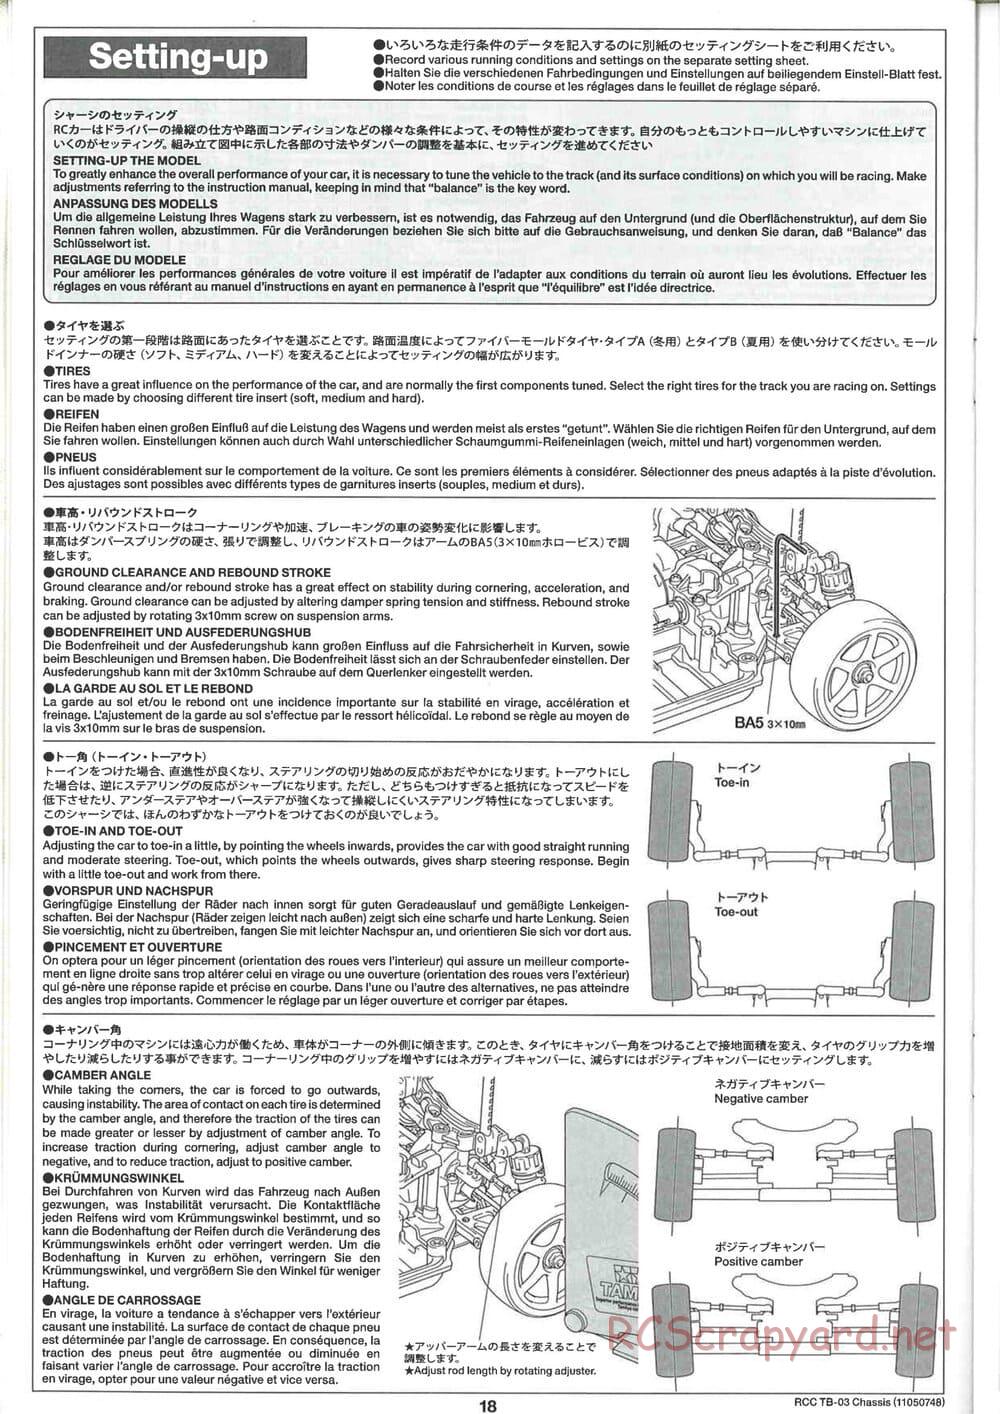 Tamiya - TB-03 Chassis - Manual - Page 18